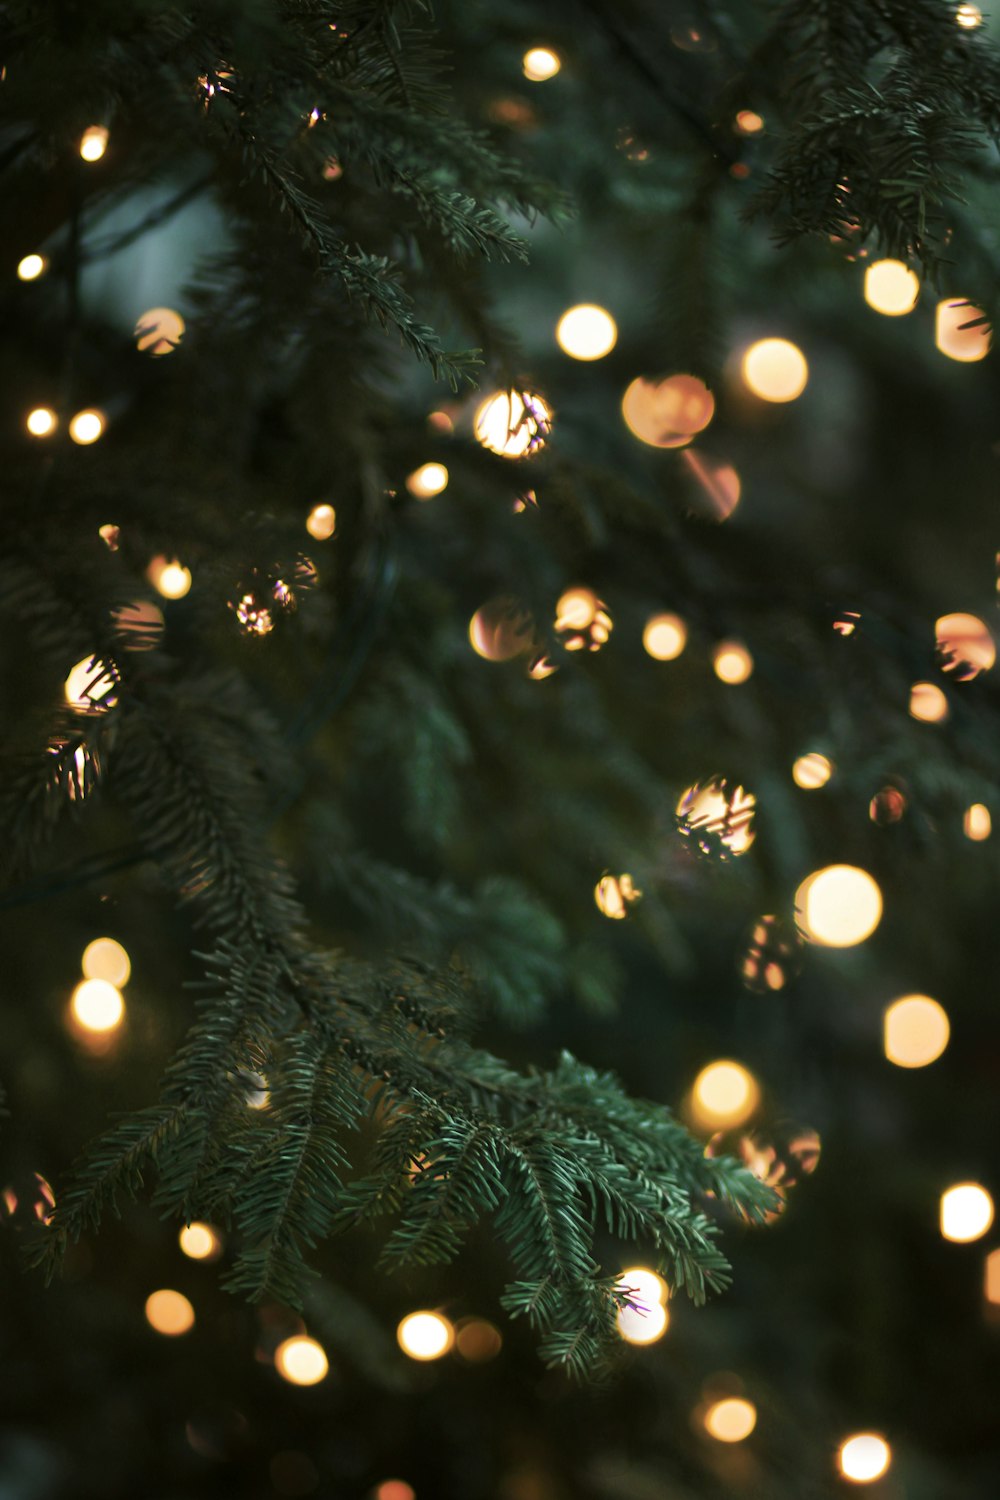 Nắm bắt hình nền Giáng Sinh miễn phí từ Unsplash, trang web với chất lượng hình ảnh tốt nhất để sử dụng vào dịp lễ hội. Keyword miễn phí được rất nhiều người dùng quan tâm và giúp hình ảnh thu hút sự chú ý của khách hàng.